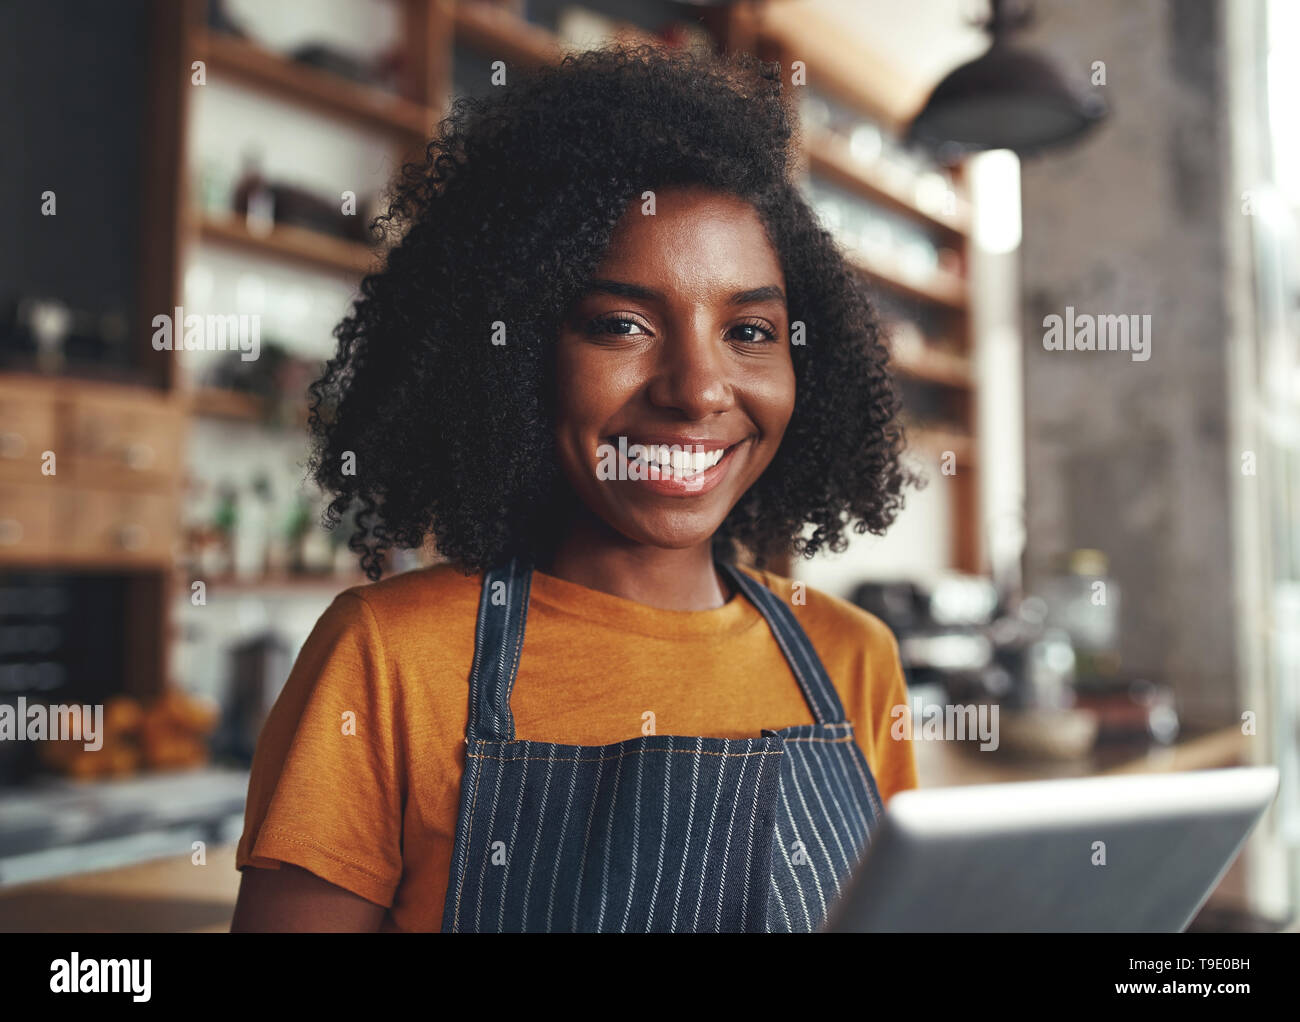 Happy young woman standing dans son café Banque D'Images